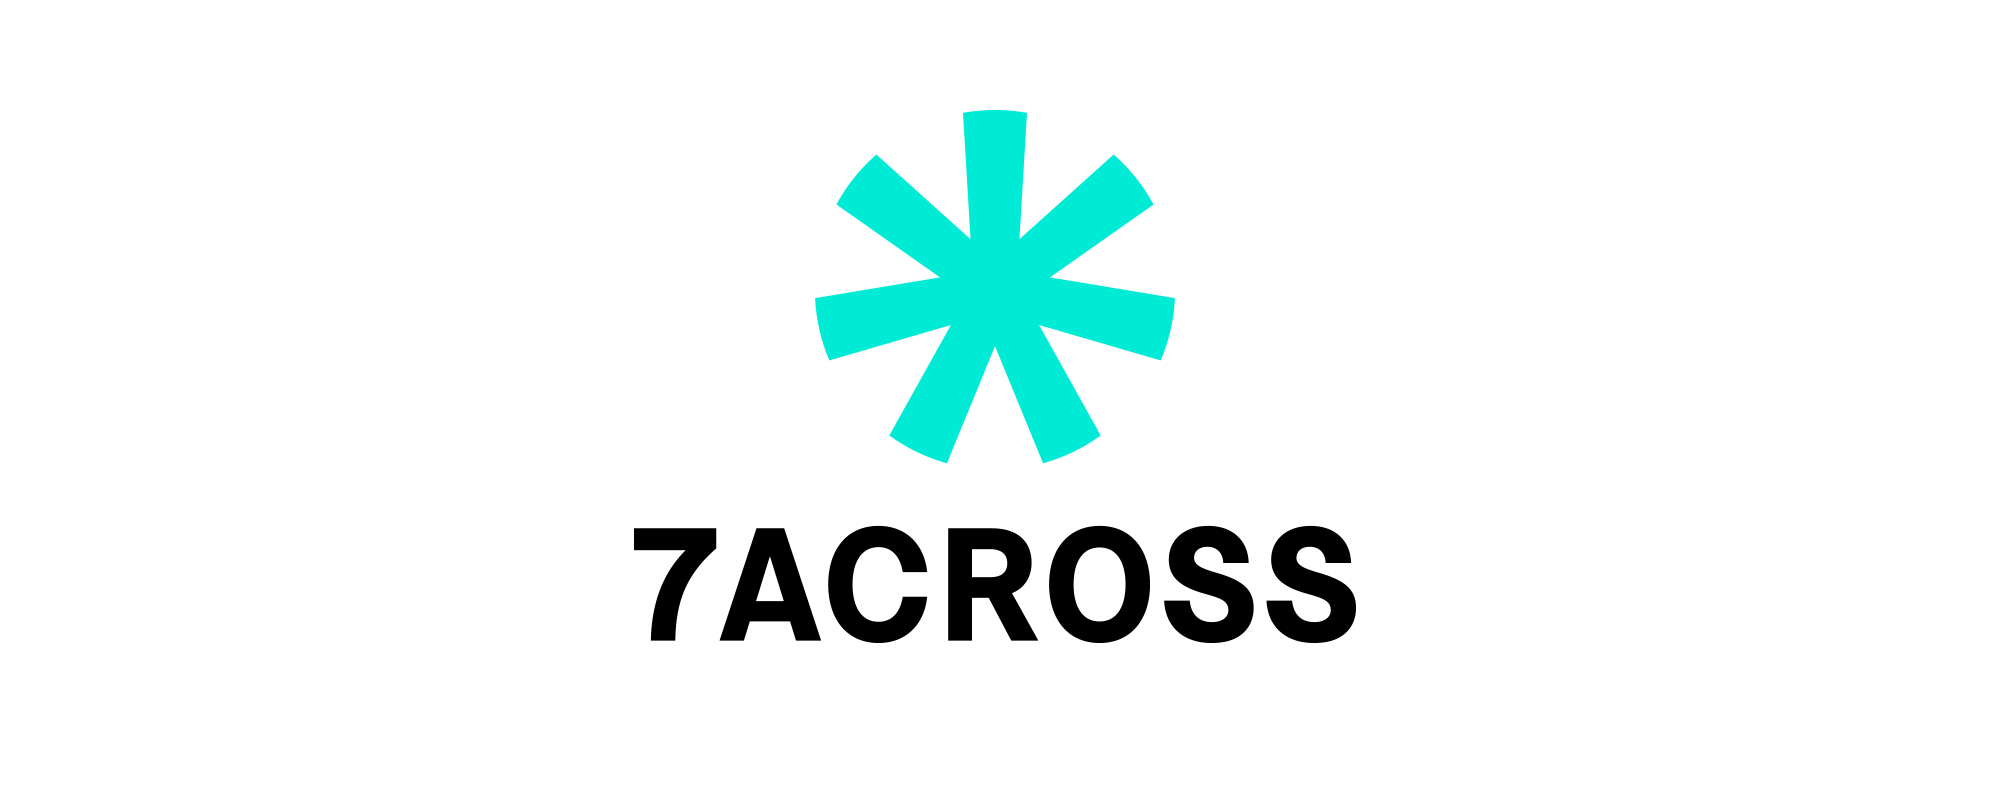 7Across logo